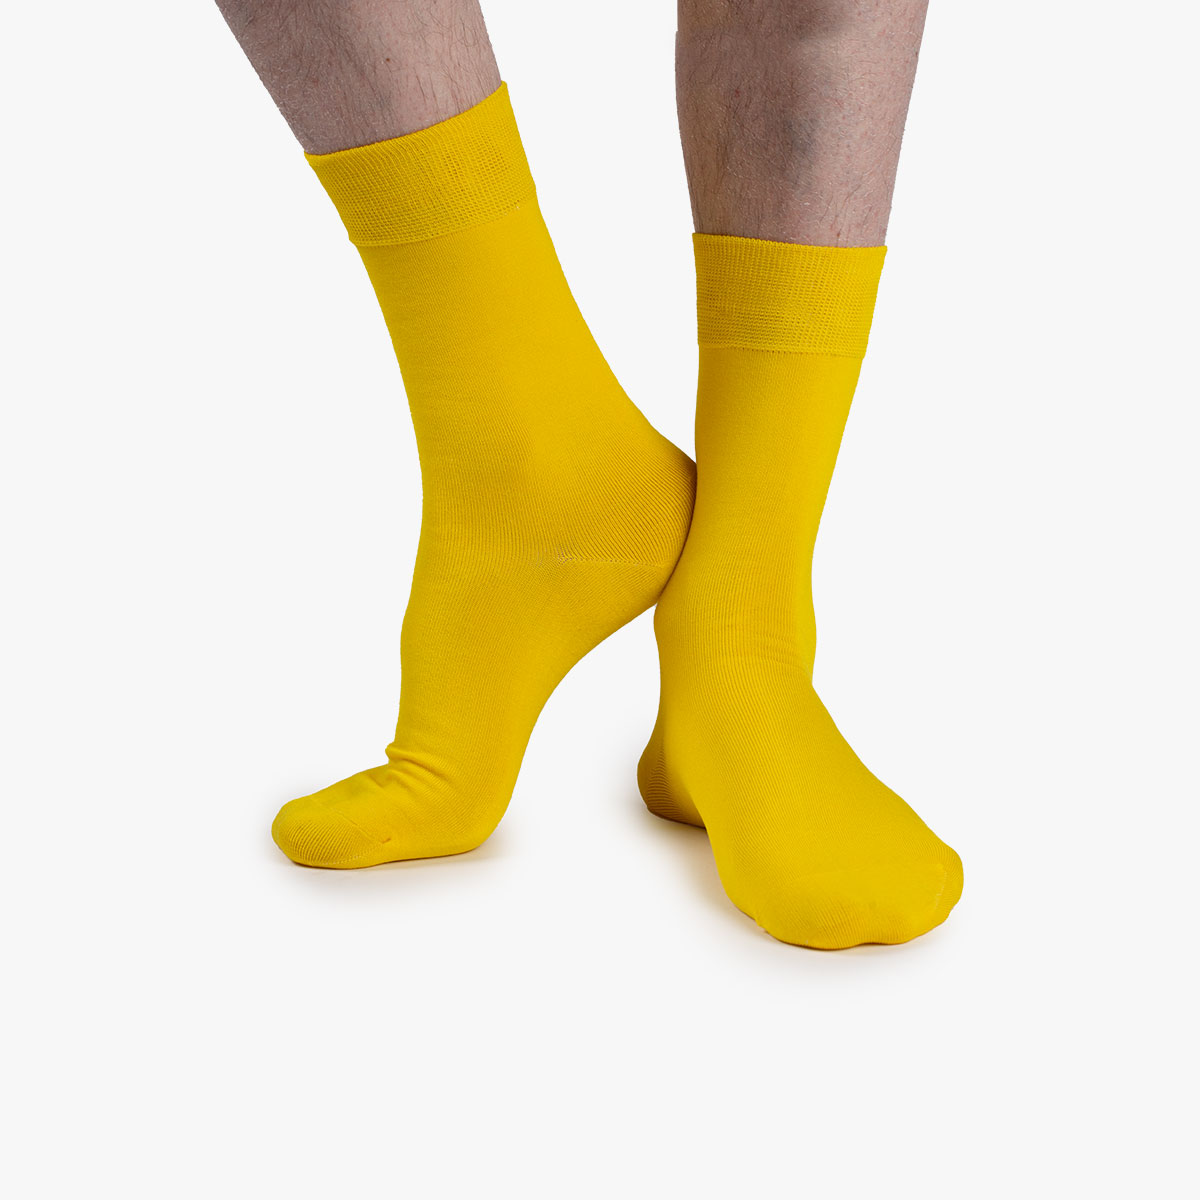 Socken in gelb aus der Sockenbox am Fuß